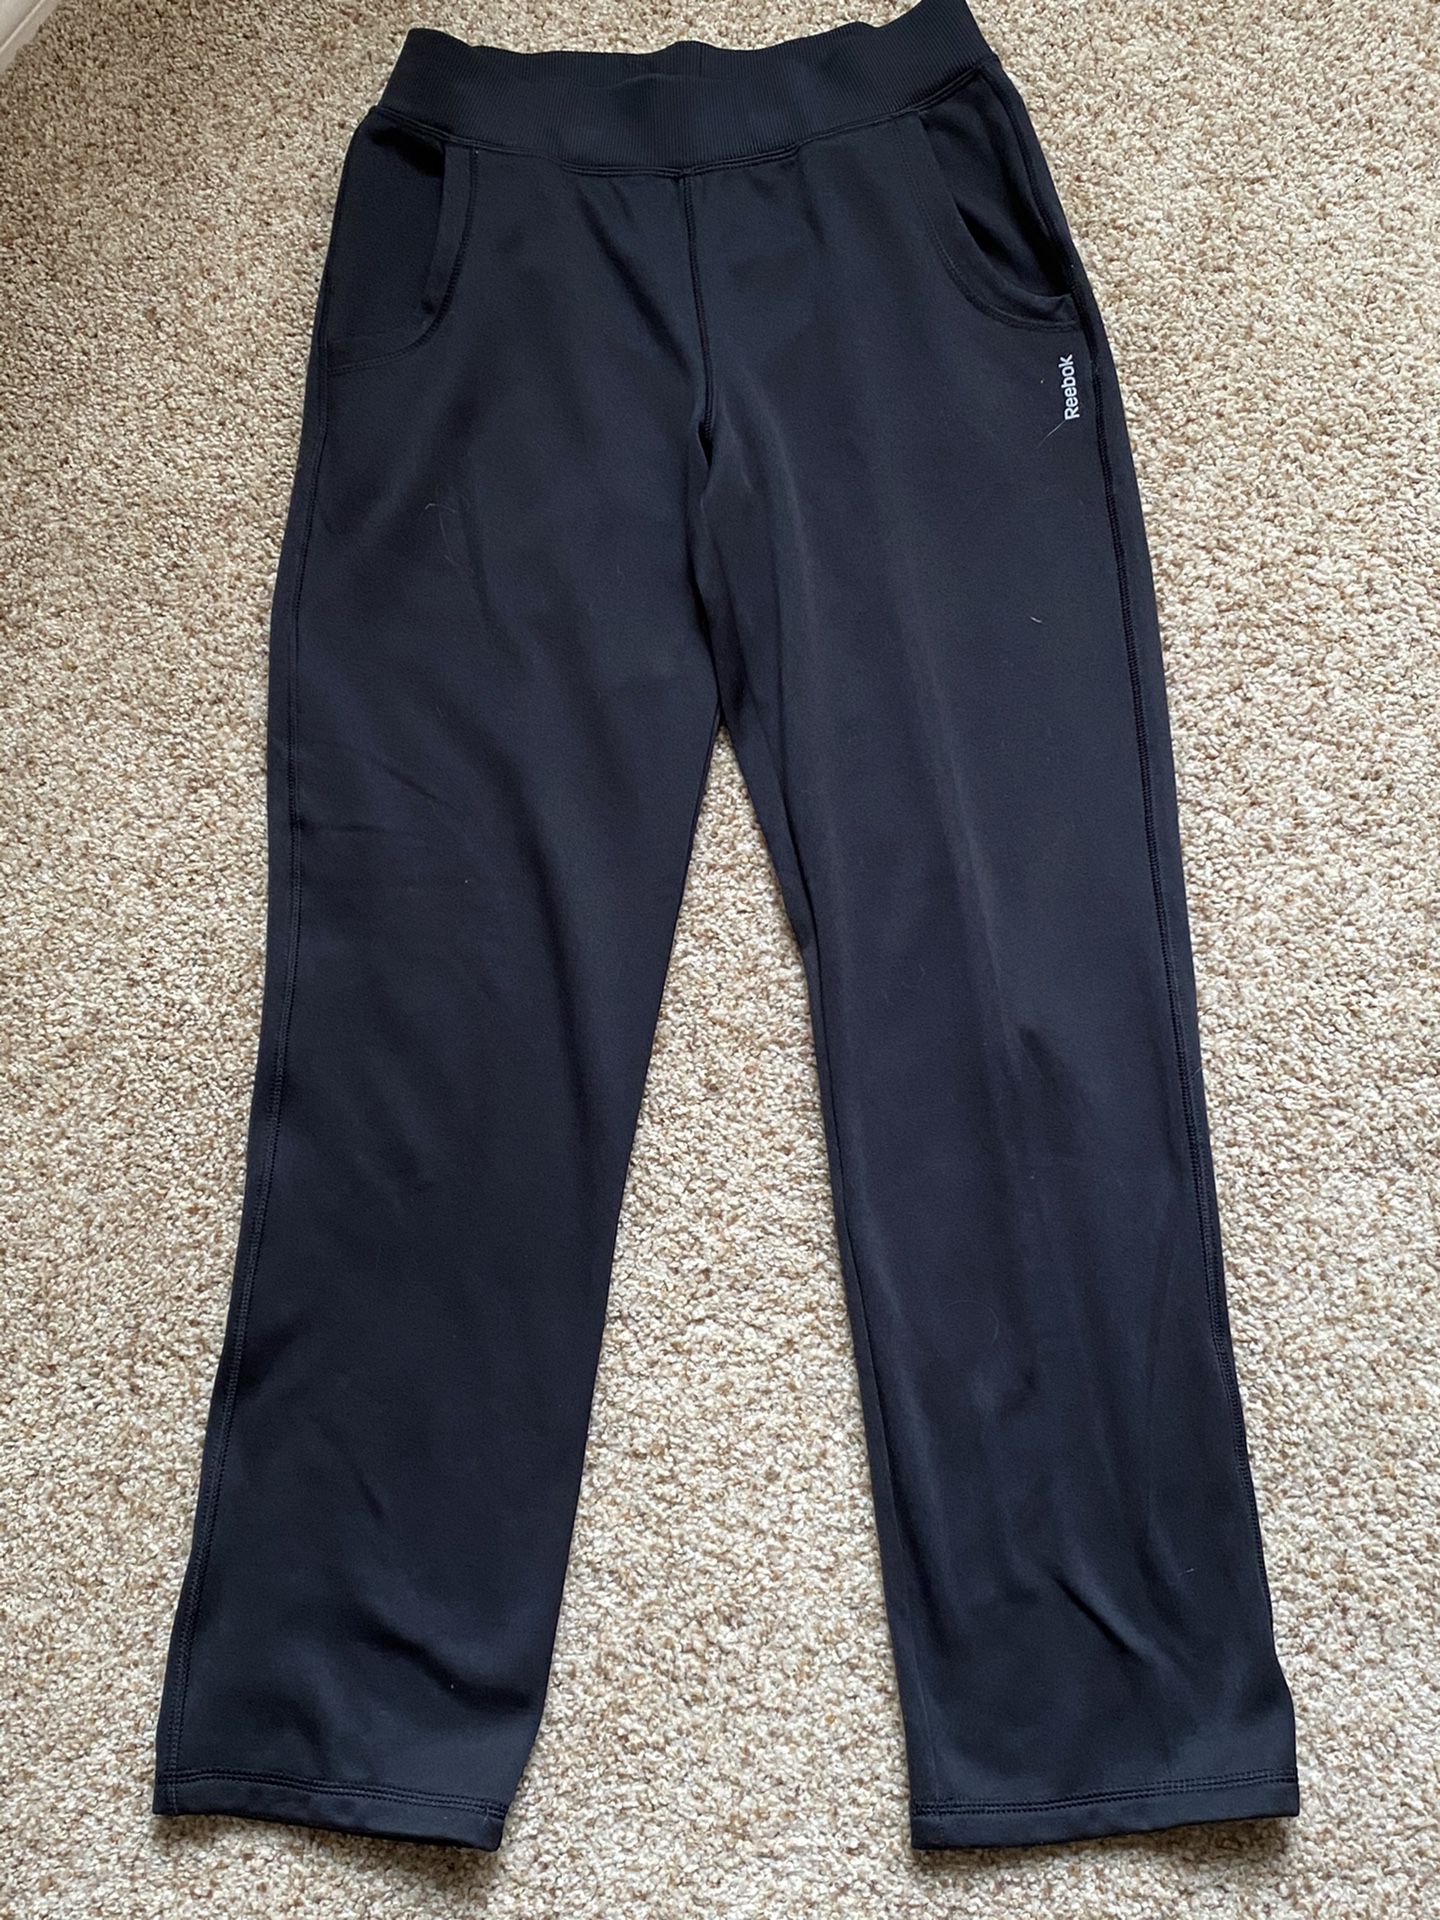 Reebok Fleece Lined Gym Pants for Sale in Arlington, TX - OfferUp